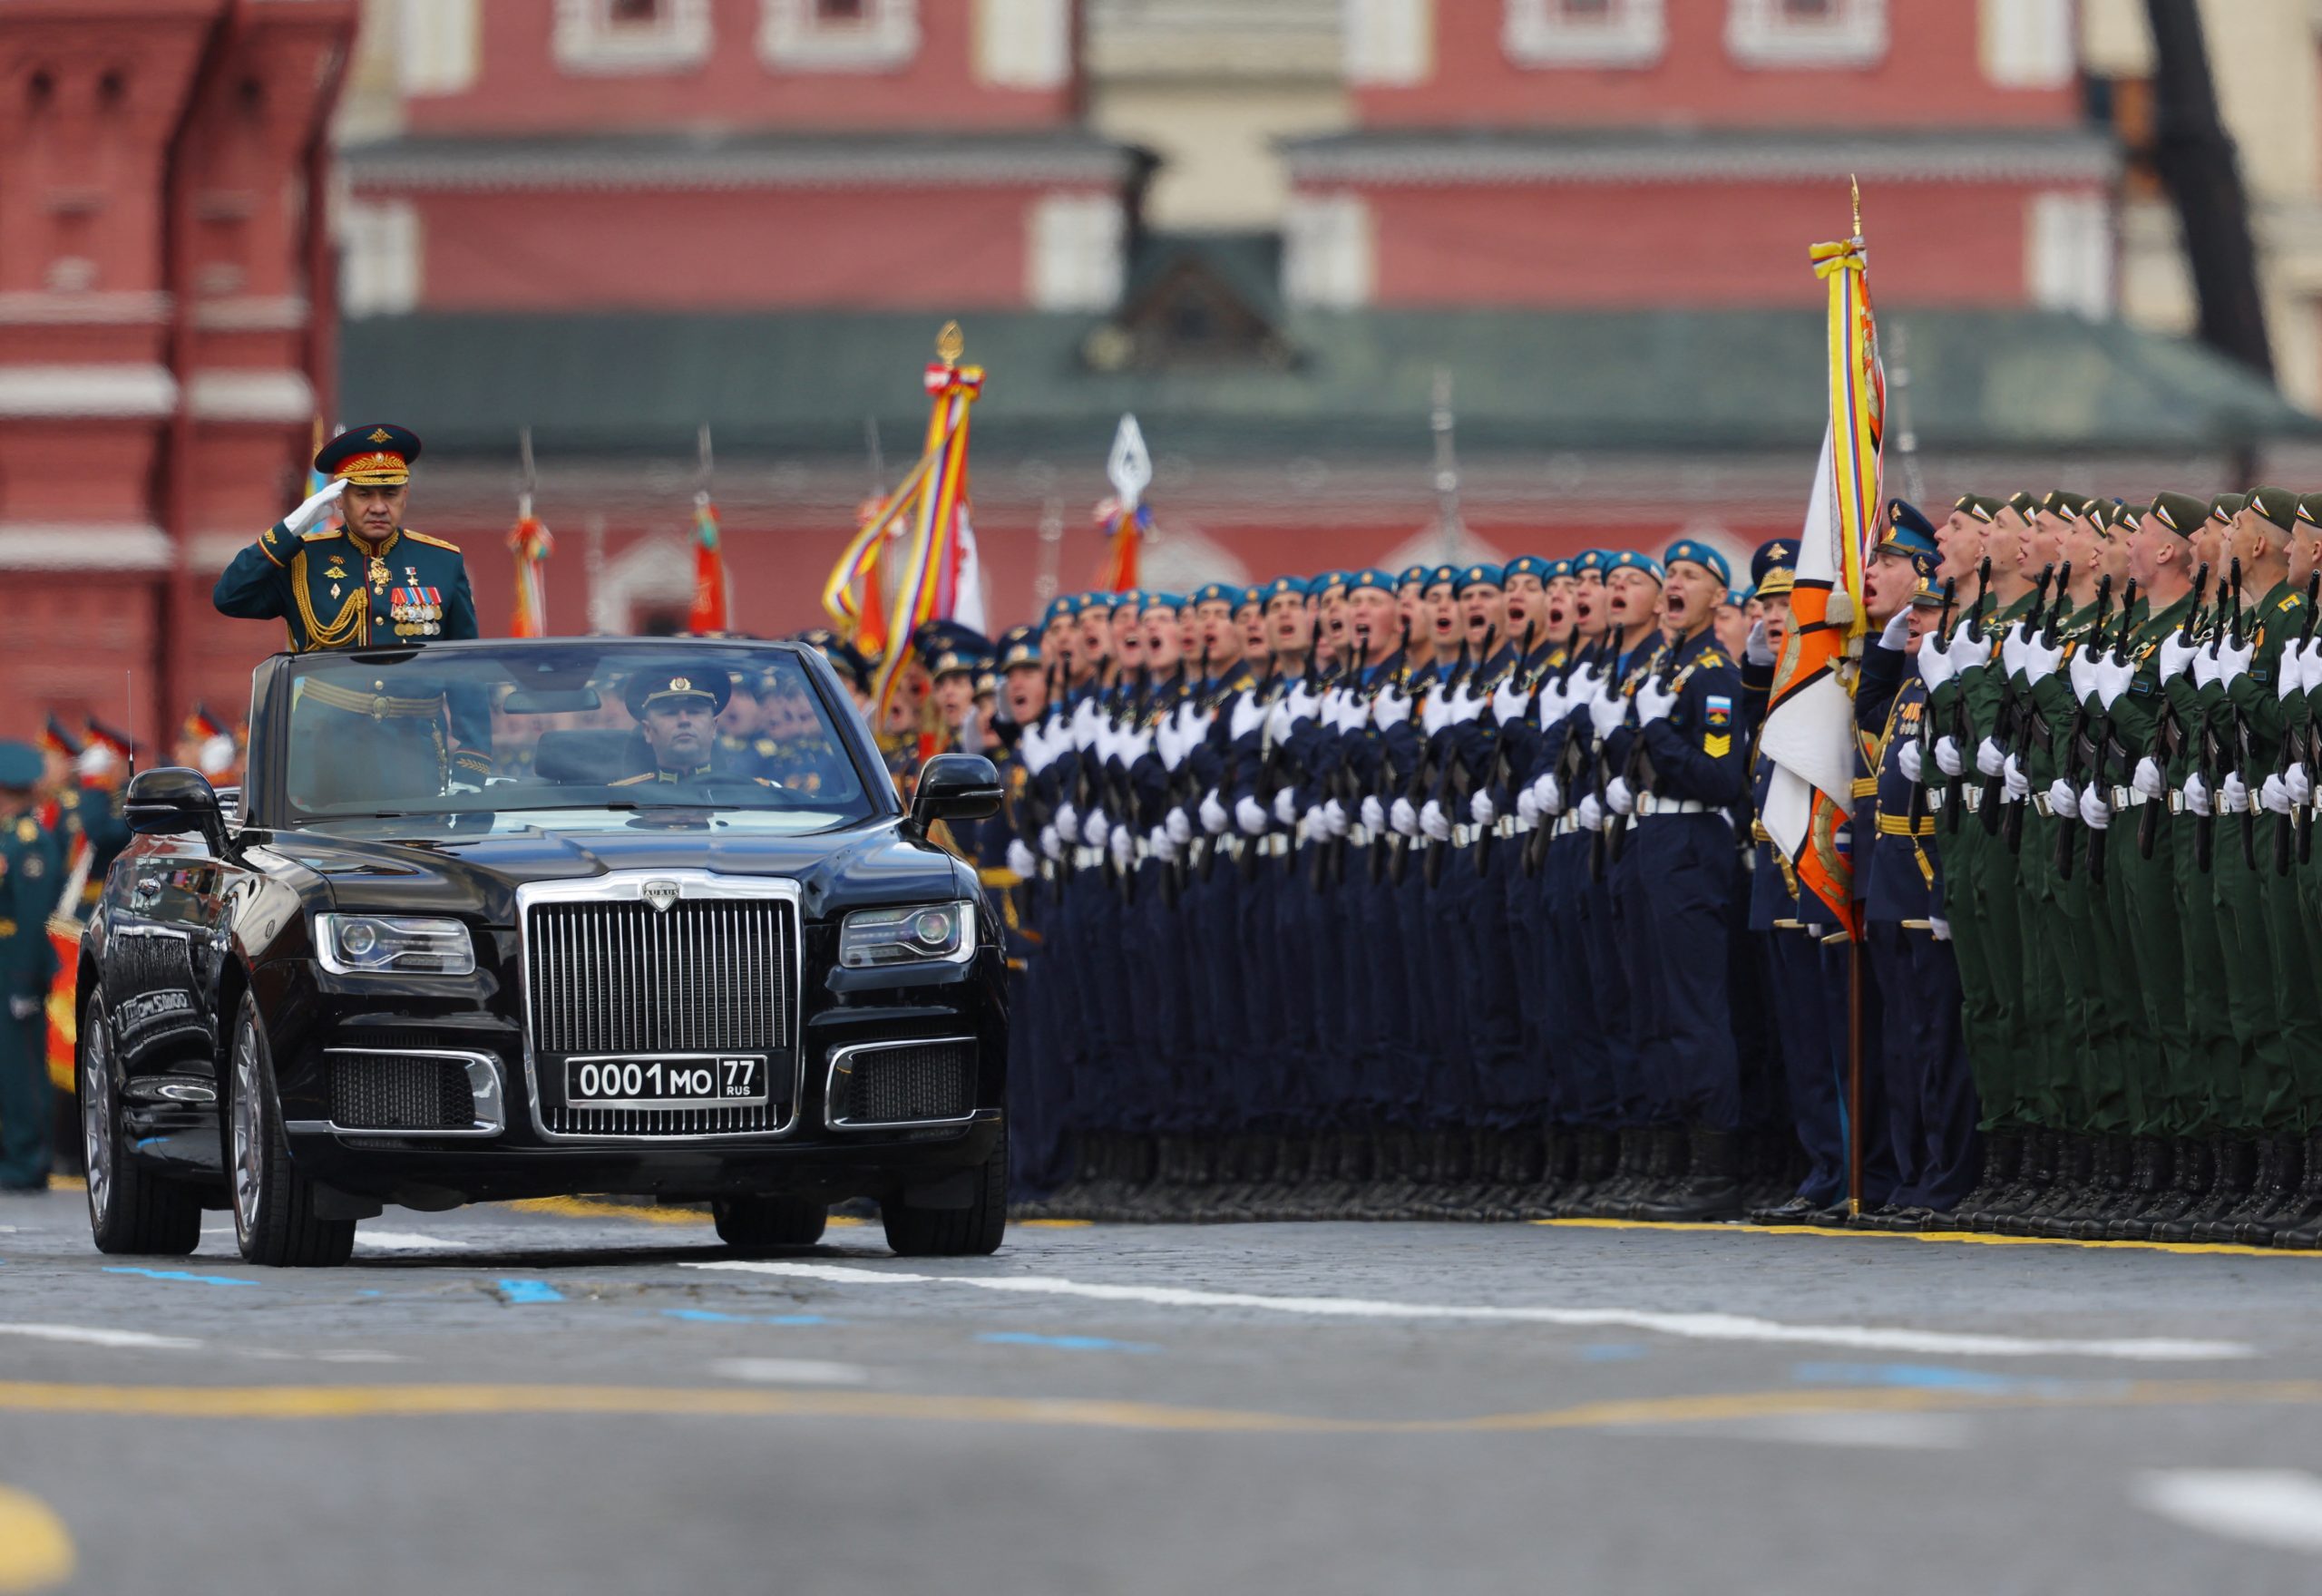 De Russische minister van Defensie Sergej Sjojgoe rijdt mee in de parade.